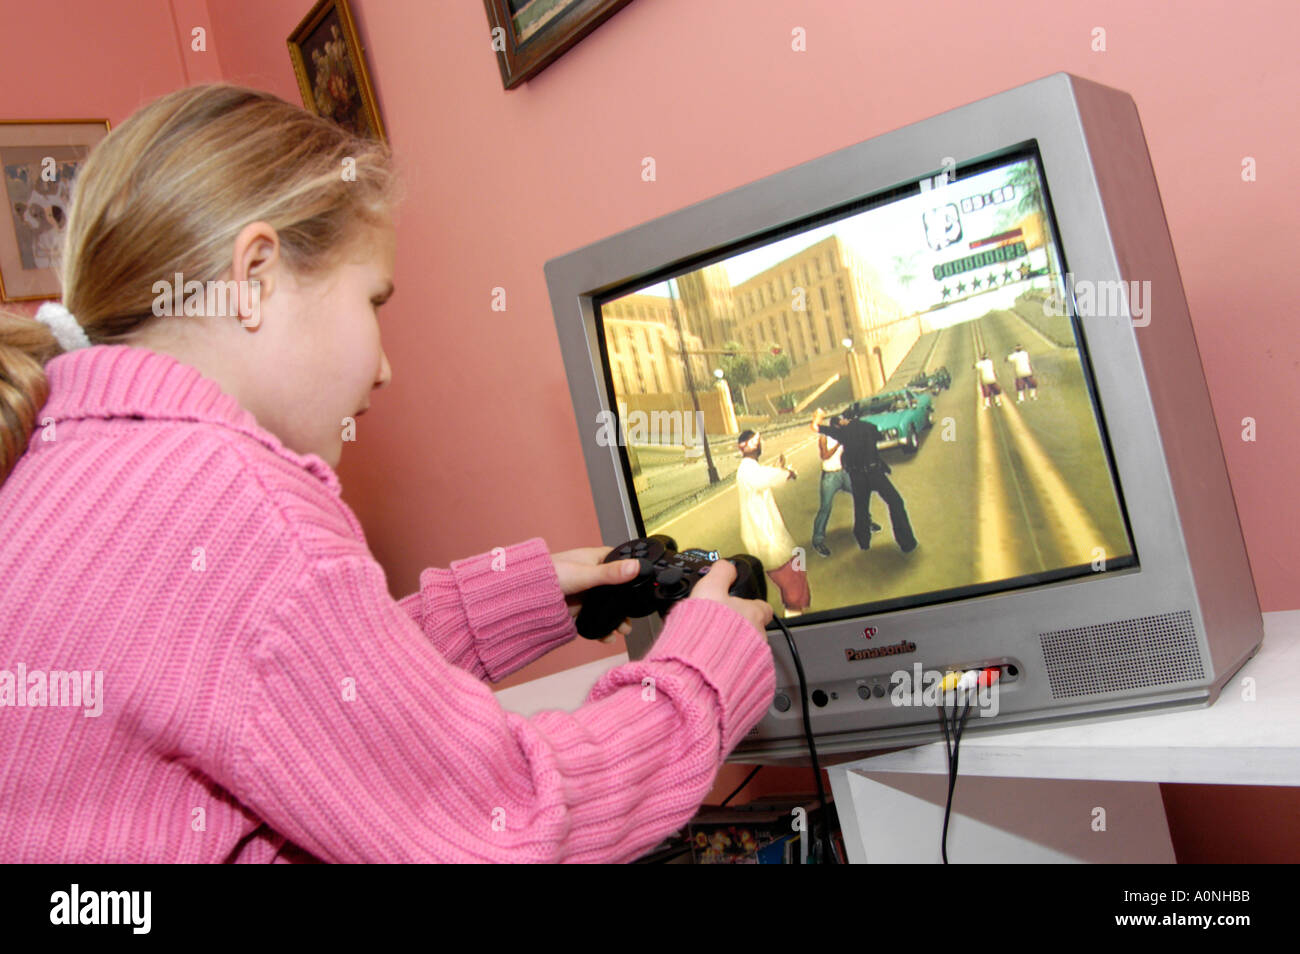 Junge Mädchen spielen gewalttätige 18 Zertifikat bewertet Computerspiel Grand Theft Auto auf Sony Playstation Konsole, England, UK Stockfoto